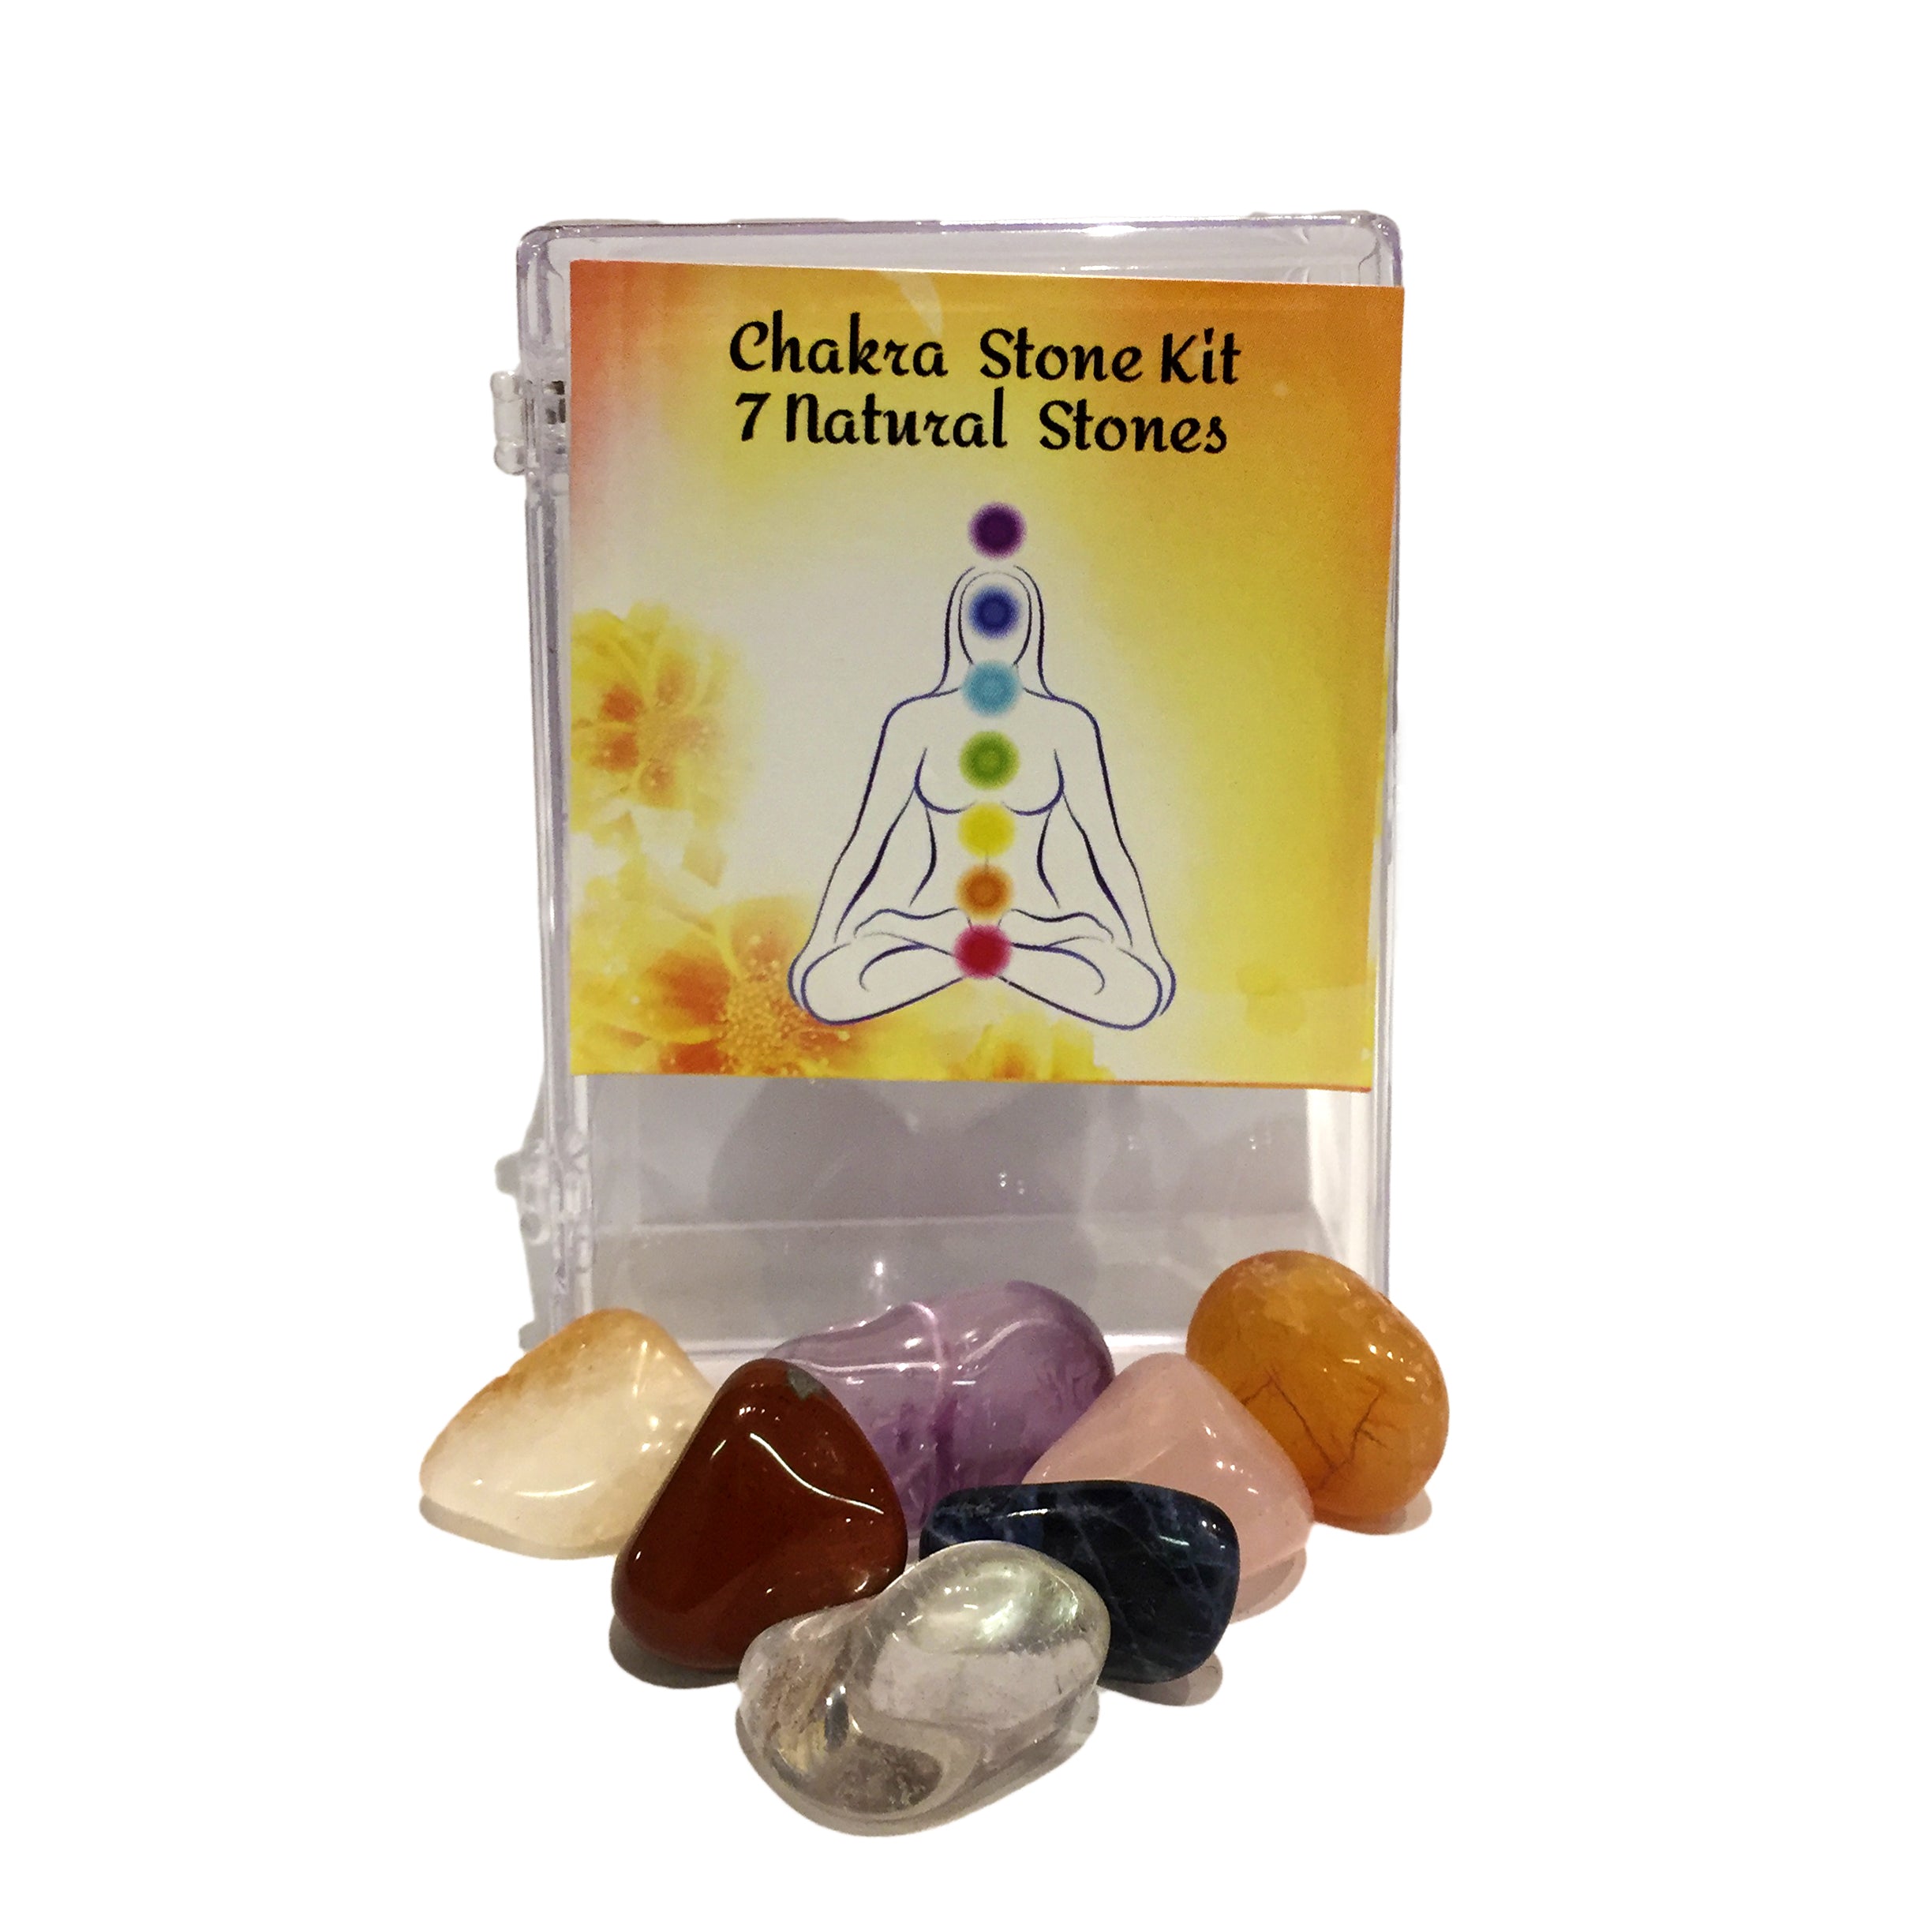 Chakra Stone Kit, 7 Natural Stones